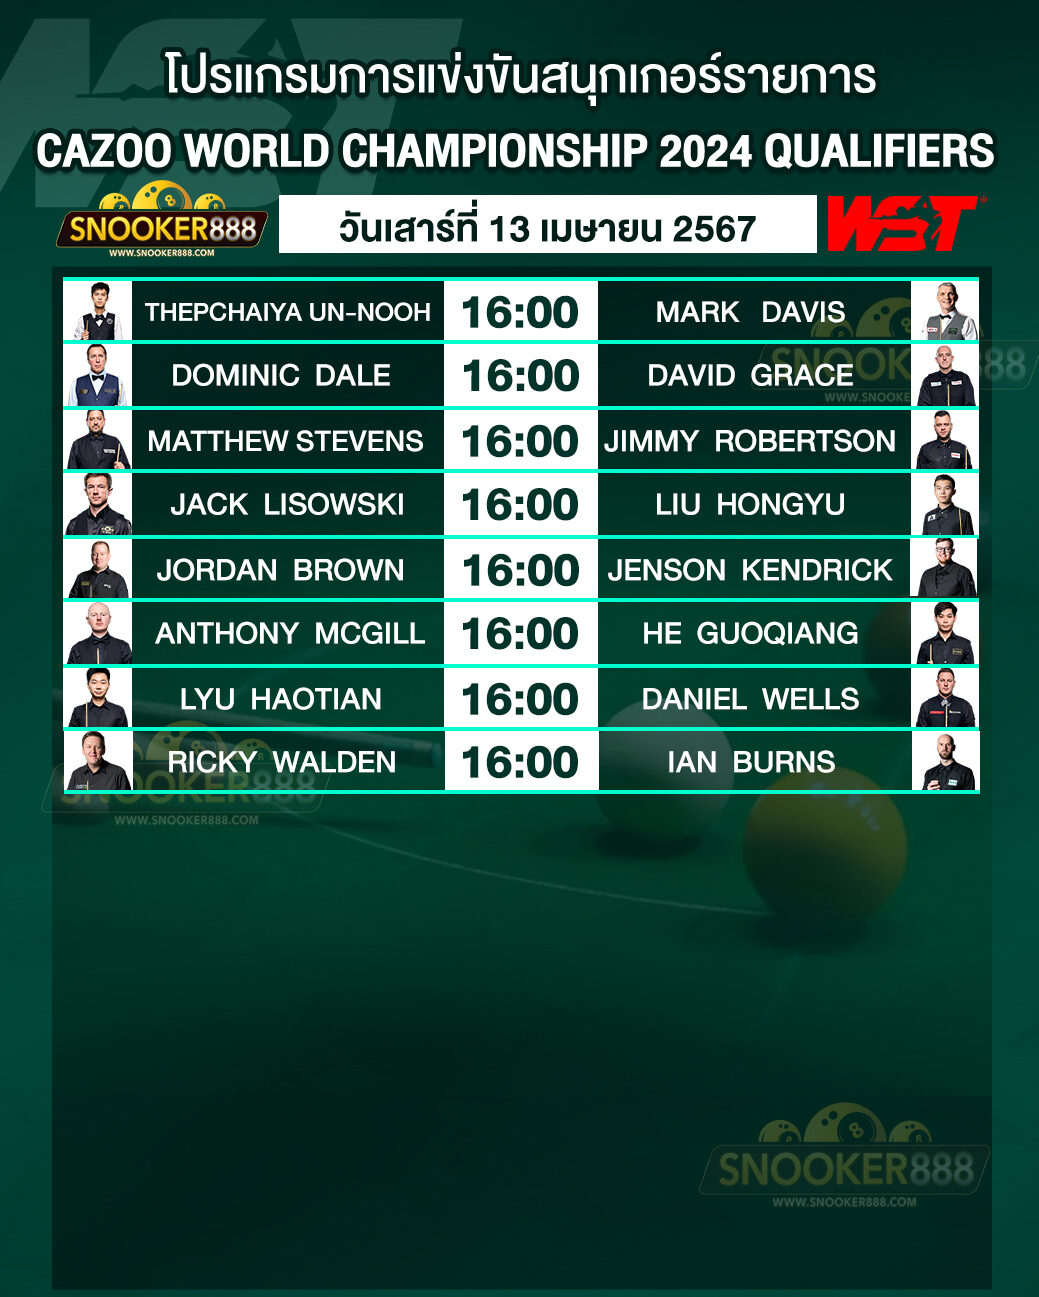 โปรแกรมการแข่งขันสนุกเกอร์ CAZOO WORLD CHAMPIONSHIP 2024 QUALIFIERS วันที่ 13 เม.ย. 67